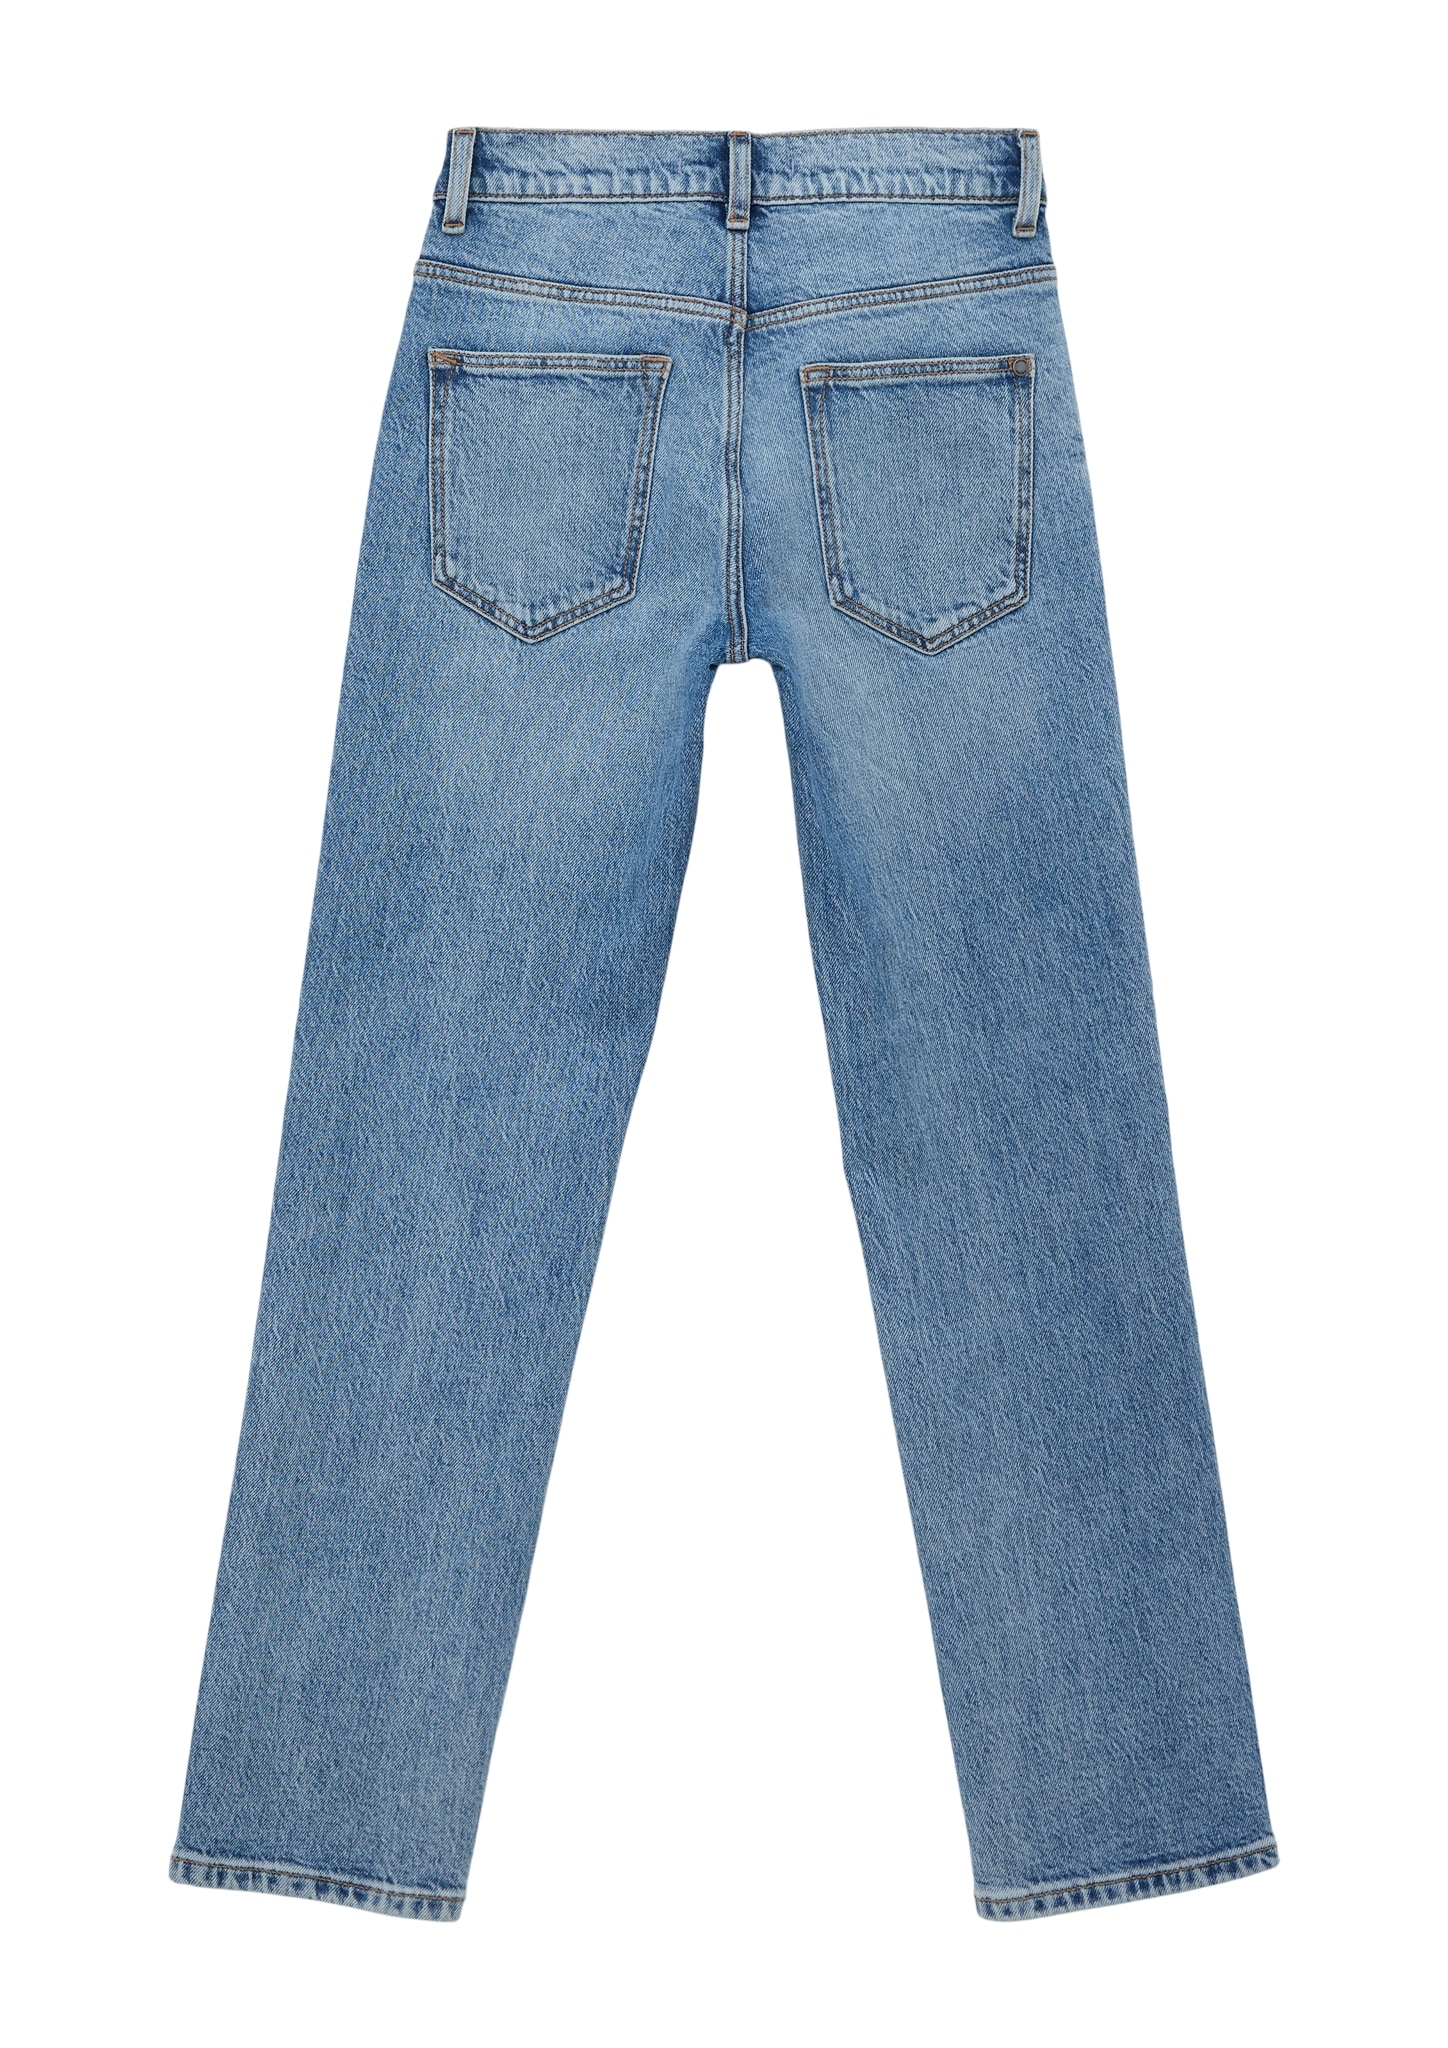 versandkostenfrei ohne Mindestbestellwert Regular-fit-Jeans, Junior shoppen 5-Pocket-Stil Trendige s.Oliver - im